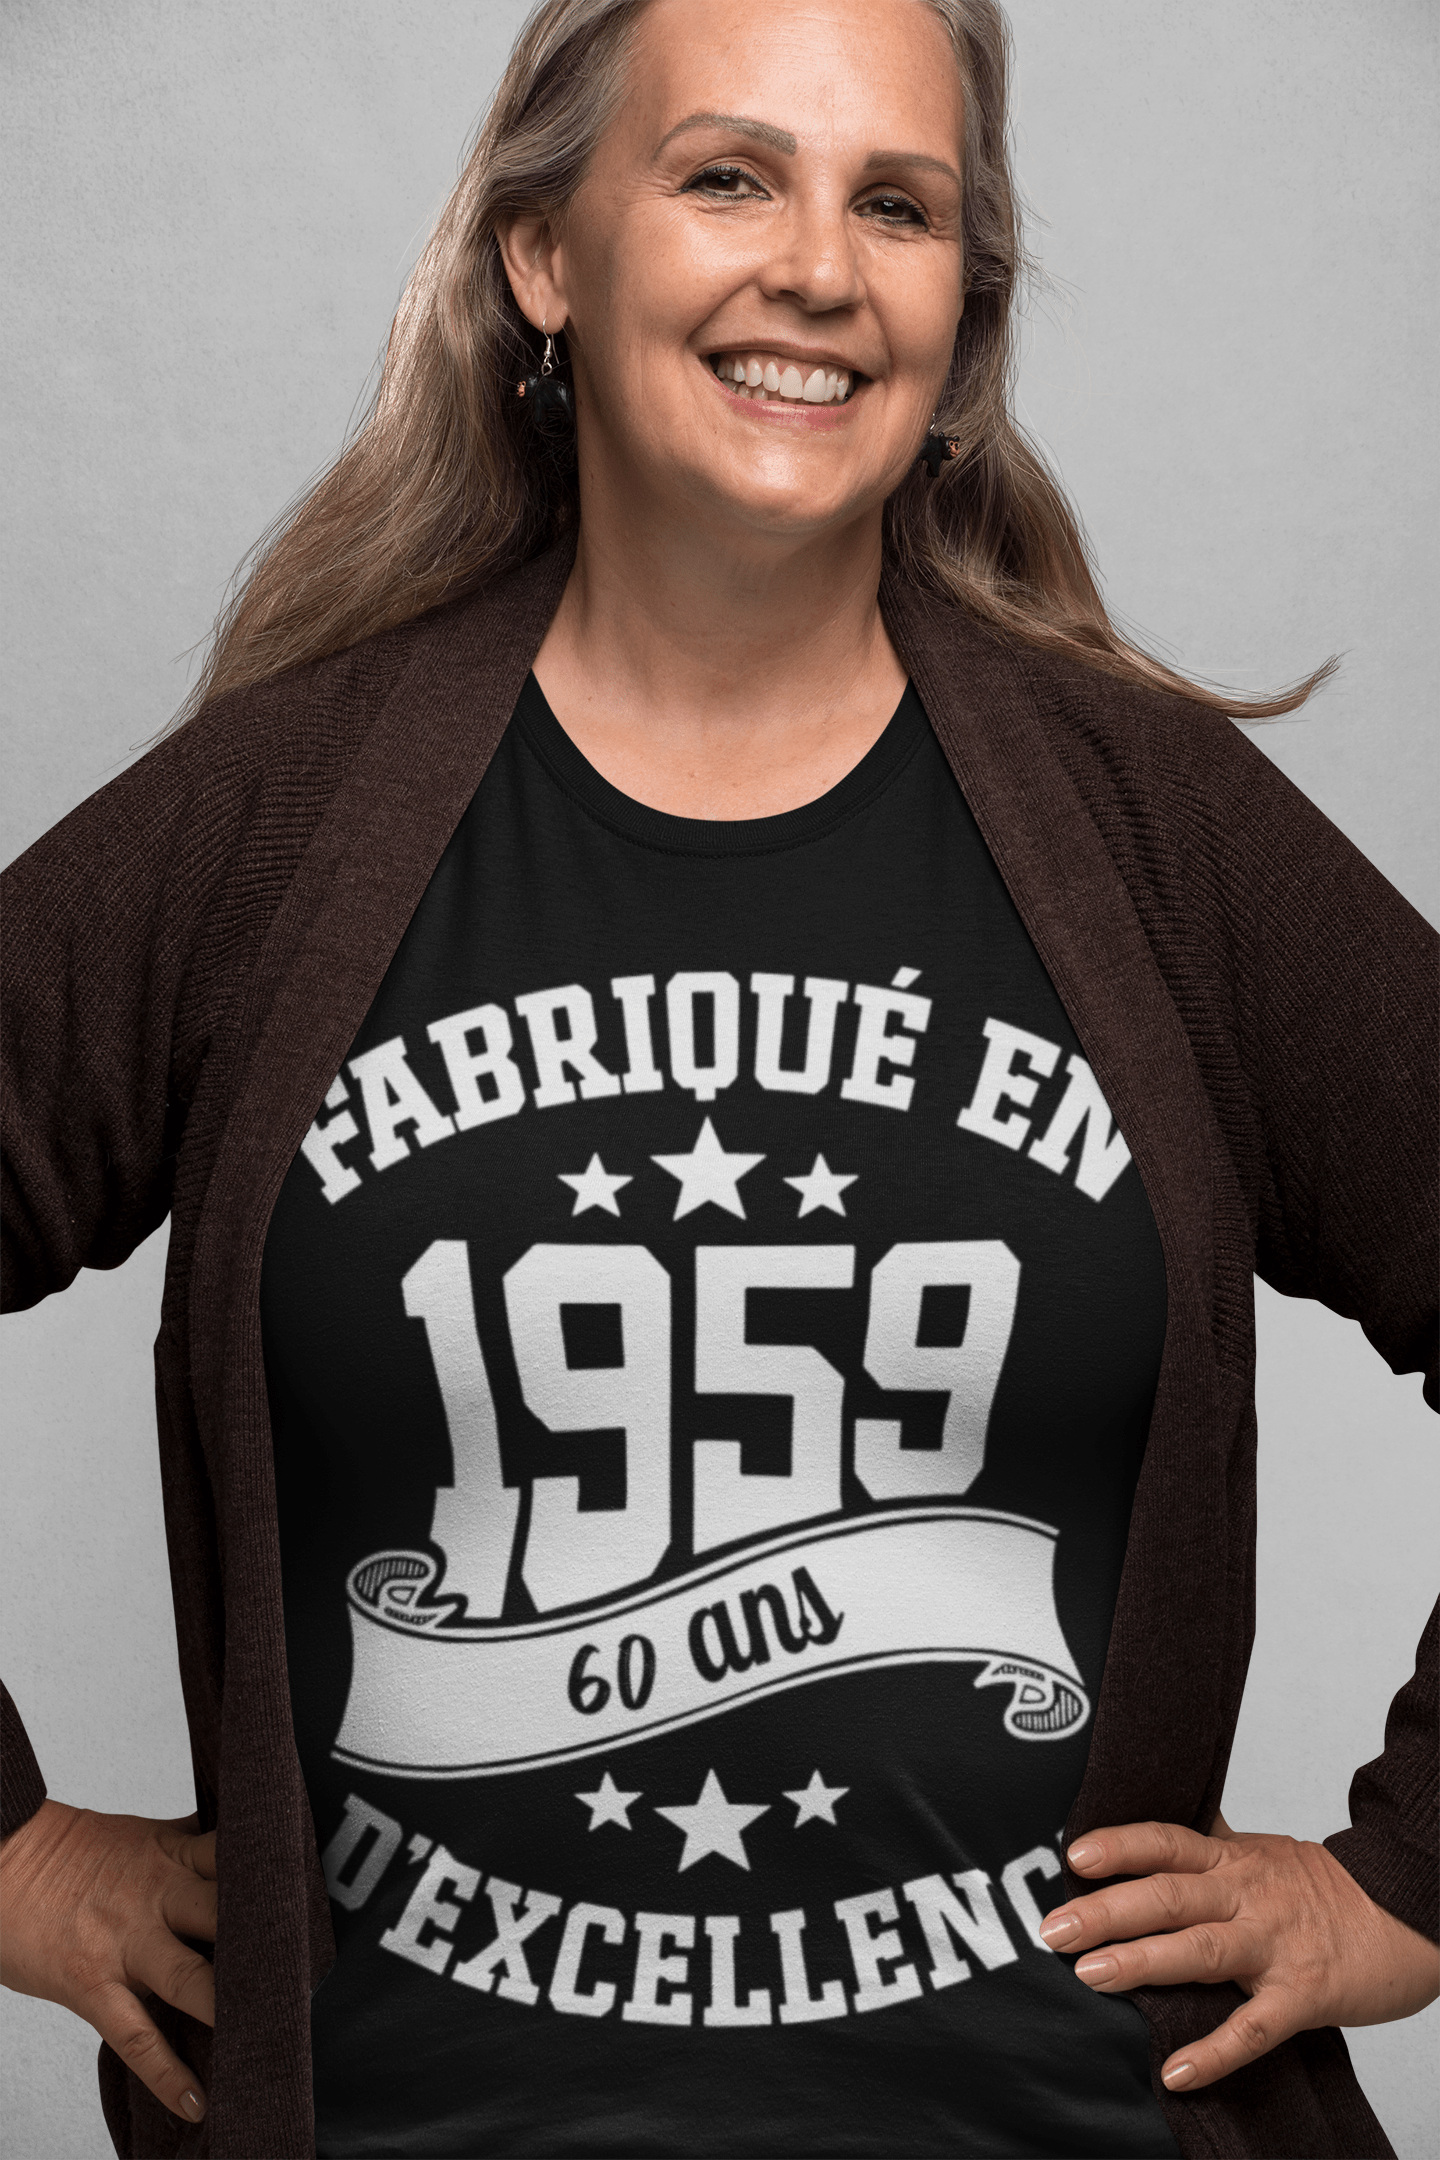 Ultrabasic - Tee-Shirt Femme col Rond Décolleté Fabriqué en 1959, 60 Ans d'être Génial T-Shirt Noir Profond